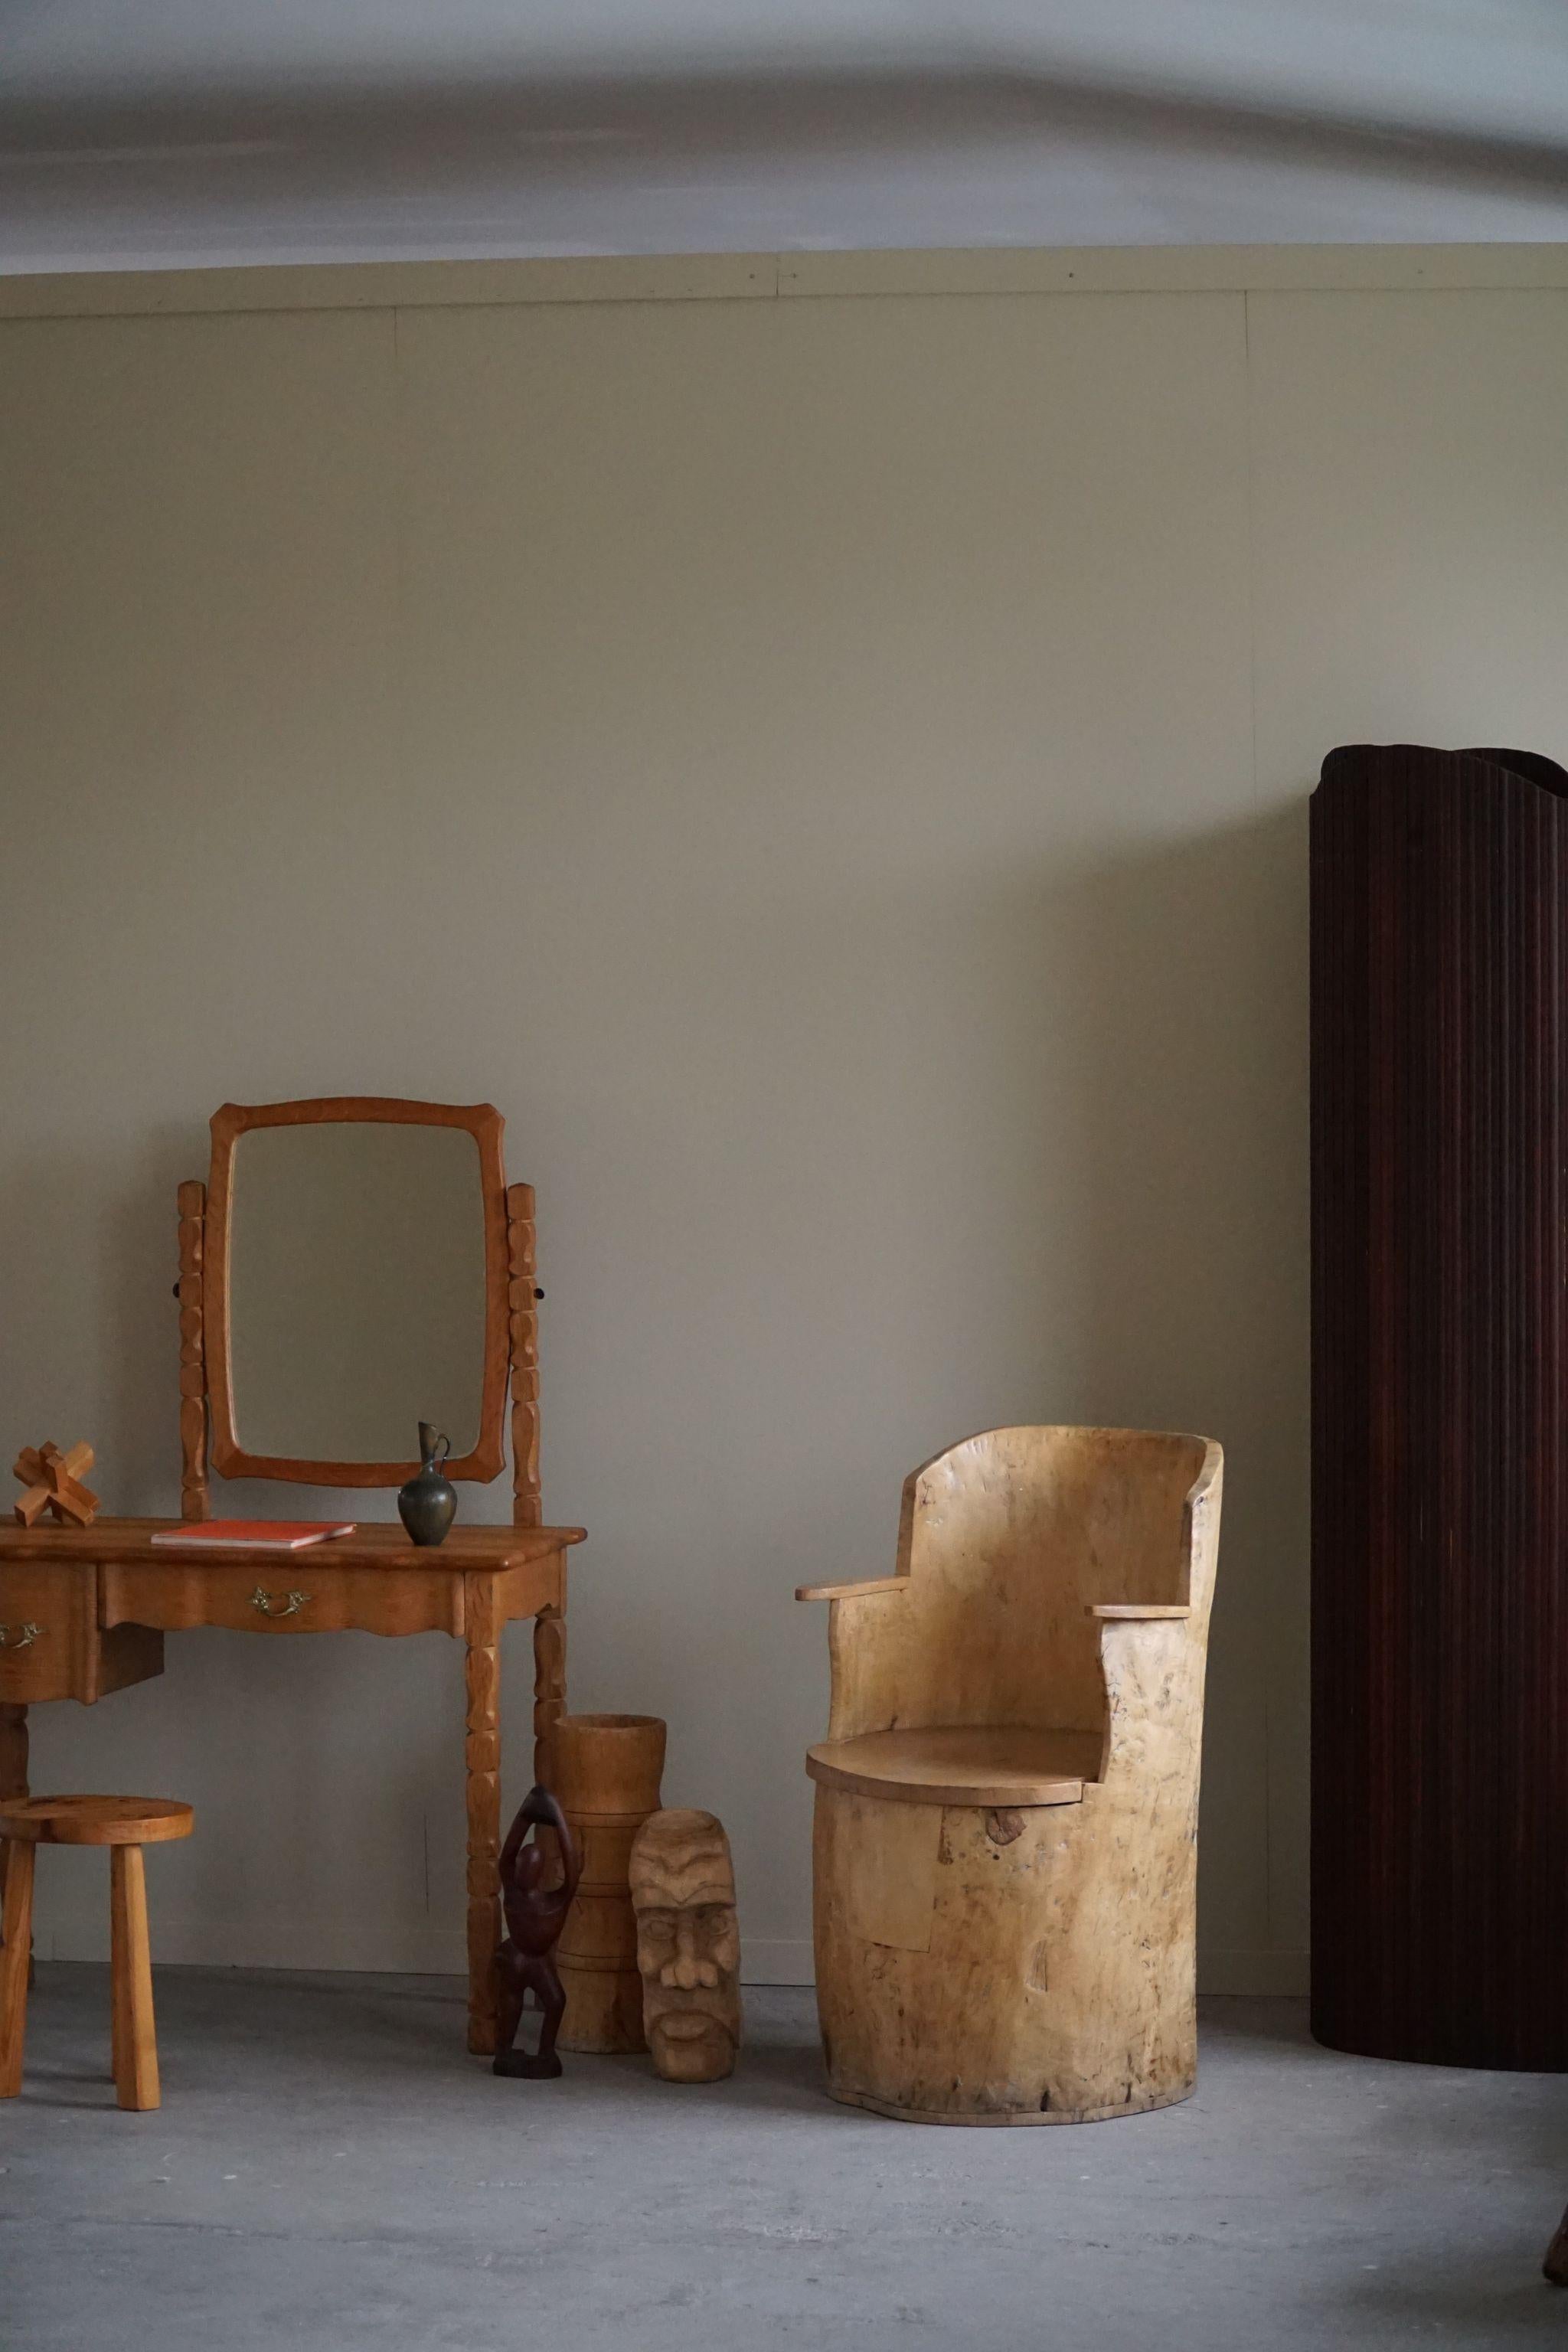 Charmante chaise primitive en bouleau massif. Sculptée à la main par un ébéniste suédois inconnu. Une belle pièce wabi sabi, parfaitement adaptée à l'intérieur moderne.

Ce fauteuil moderne s'adaptera à de nombreux types de décors d'intérieur.